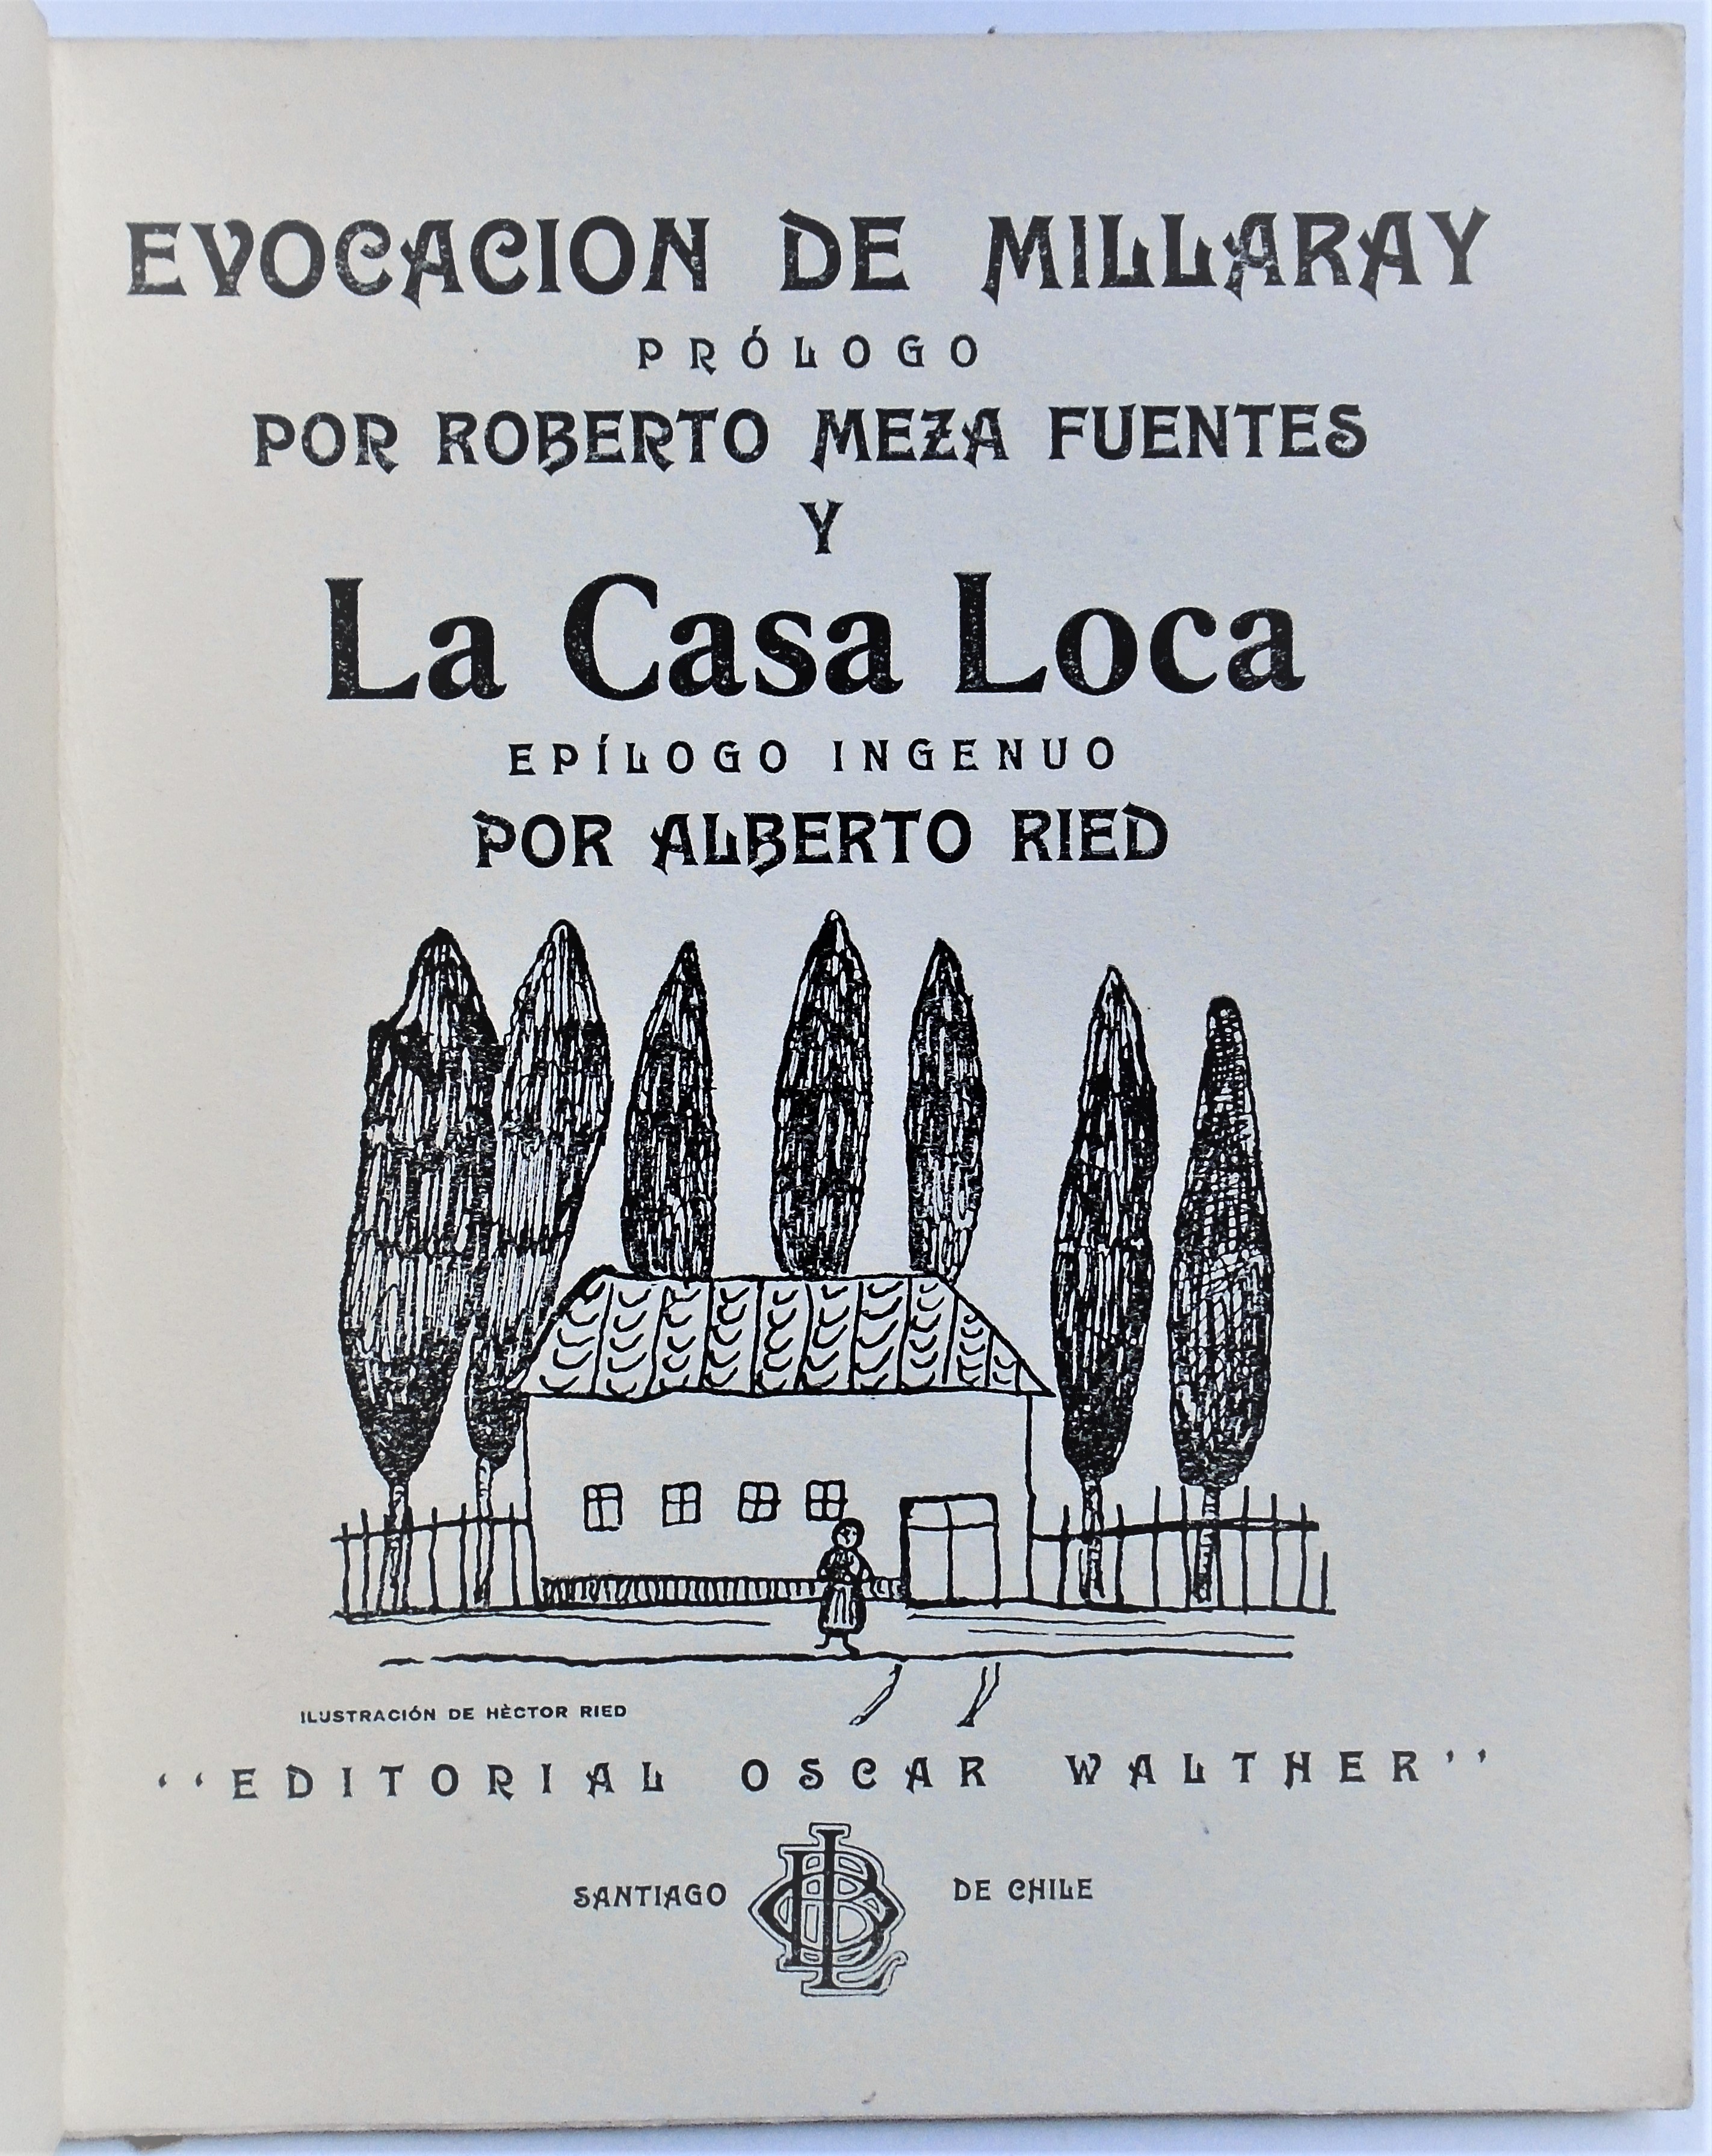 Roberto Meza Fuentes & Alberto Reid - Evocación de Millaray / La Casa Loca